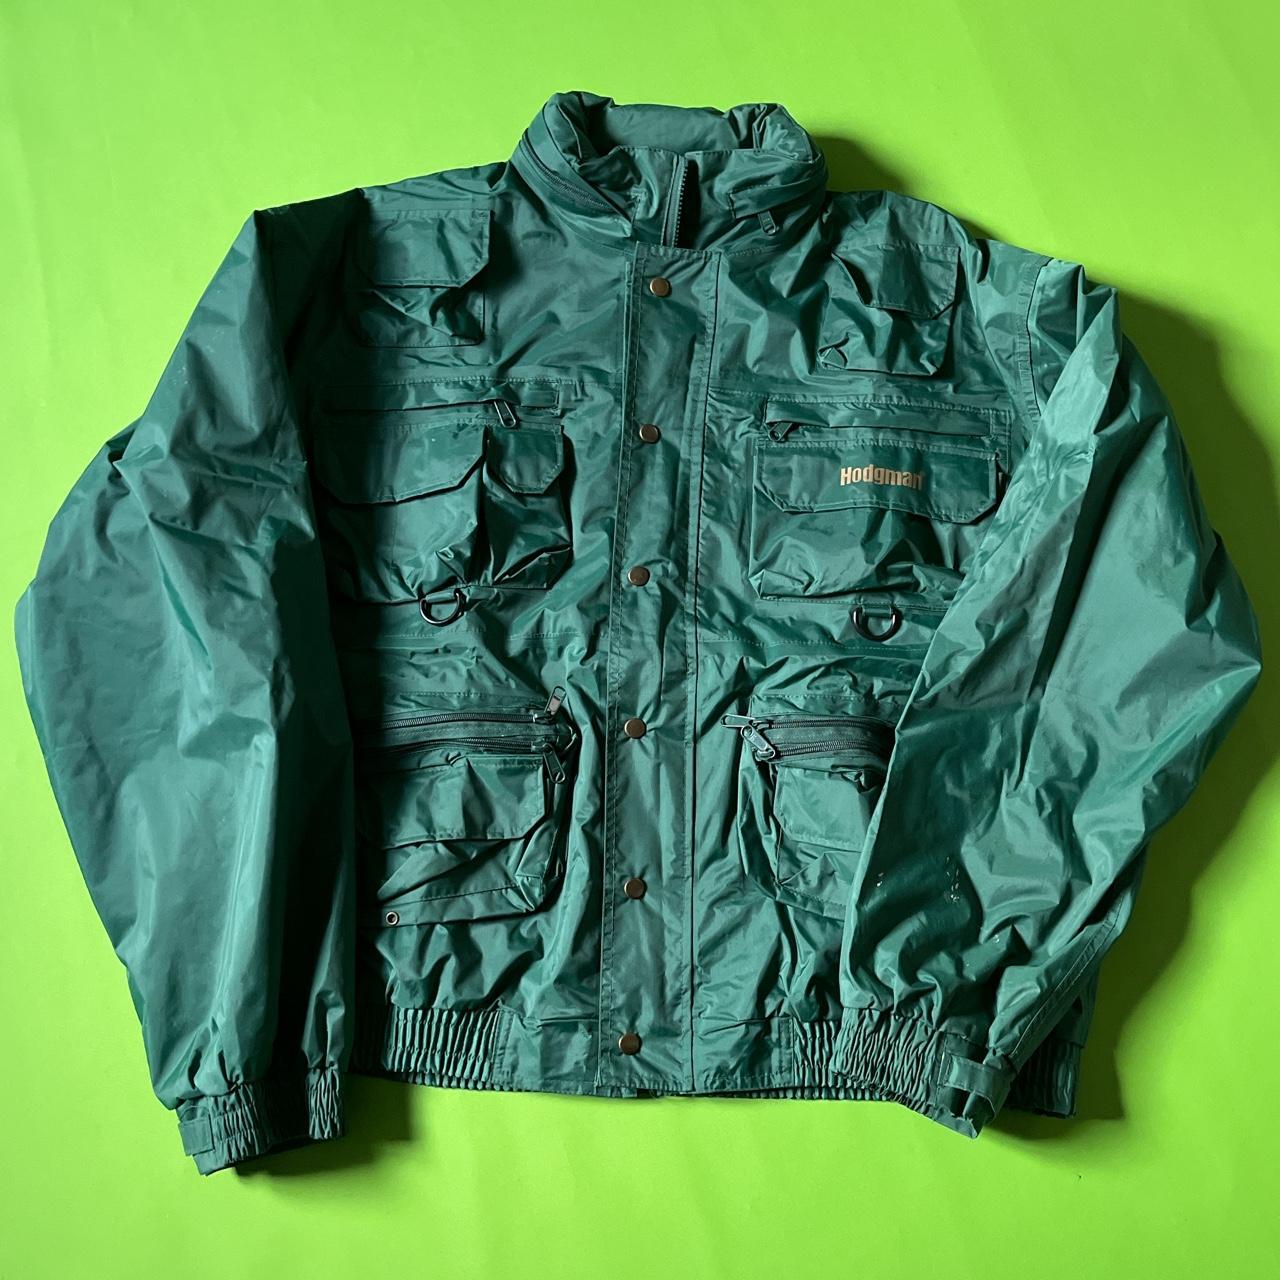 XL Hodgman Fishing Jacket wear as shown in last - Depop